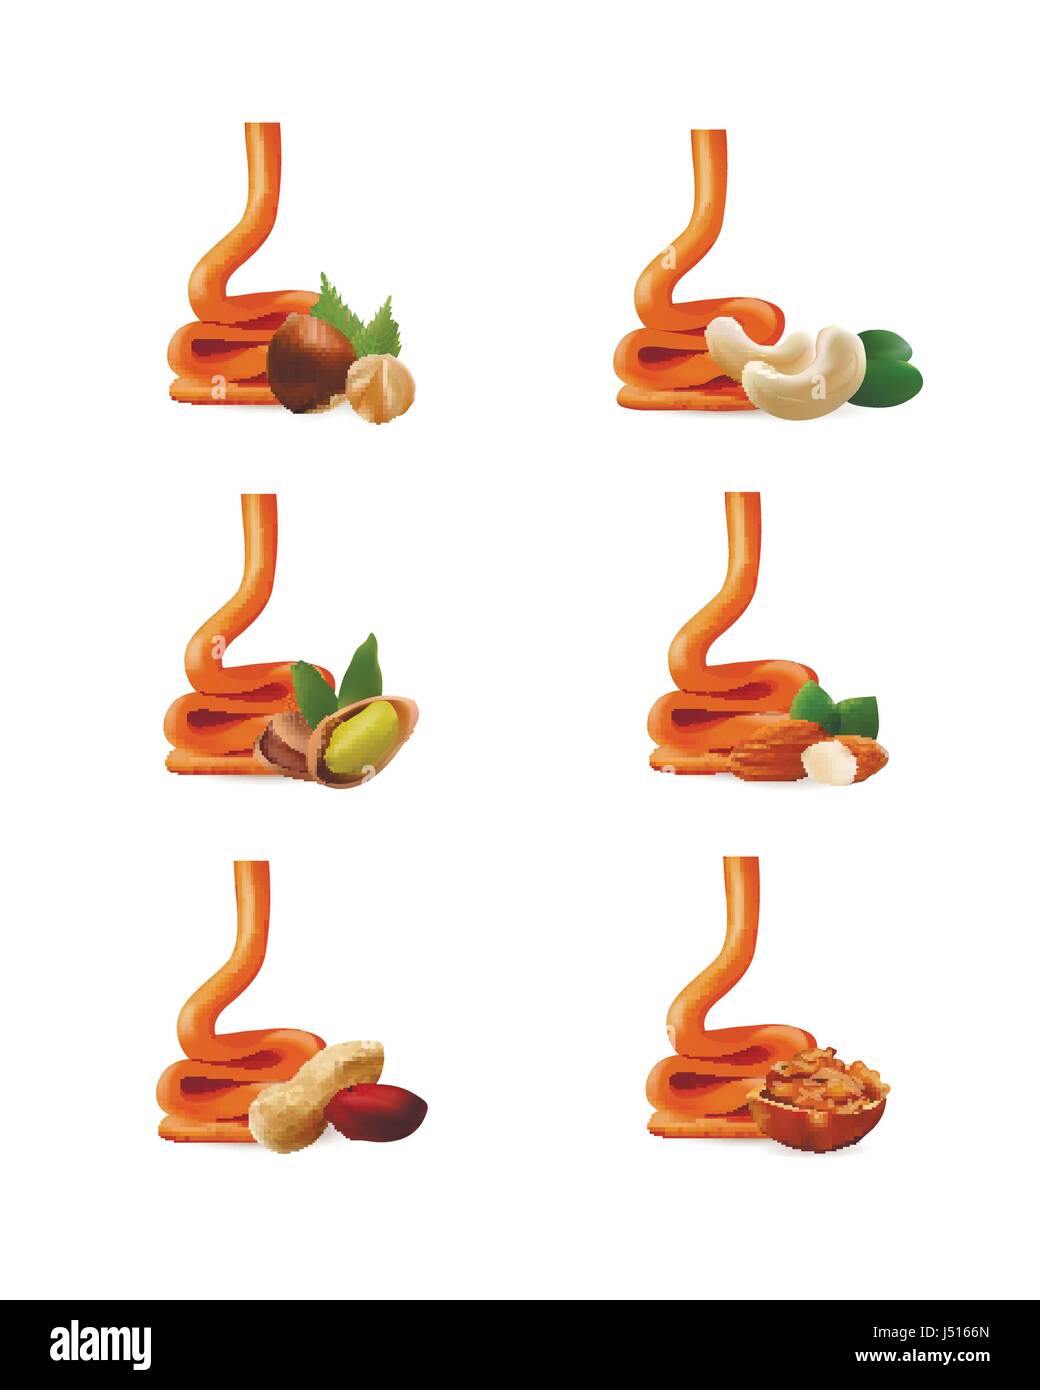 Caramel liquide avec nuts isolated on white Illustration de Vecteur